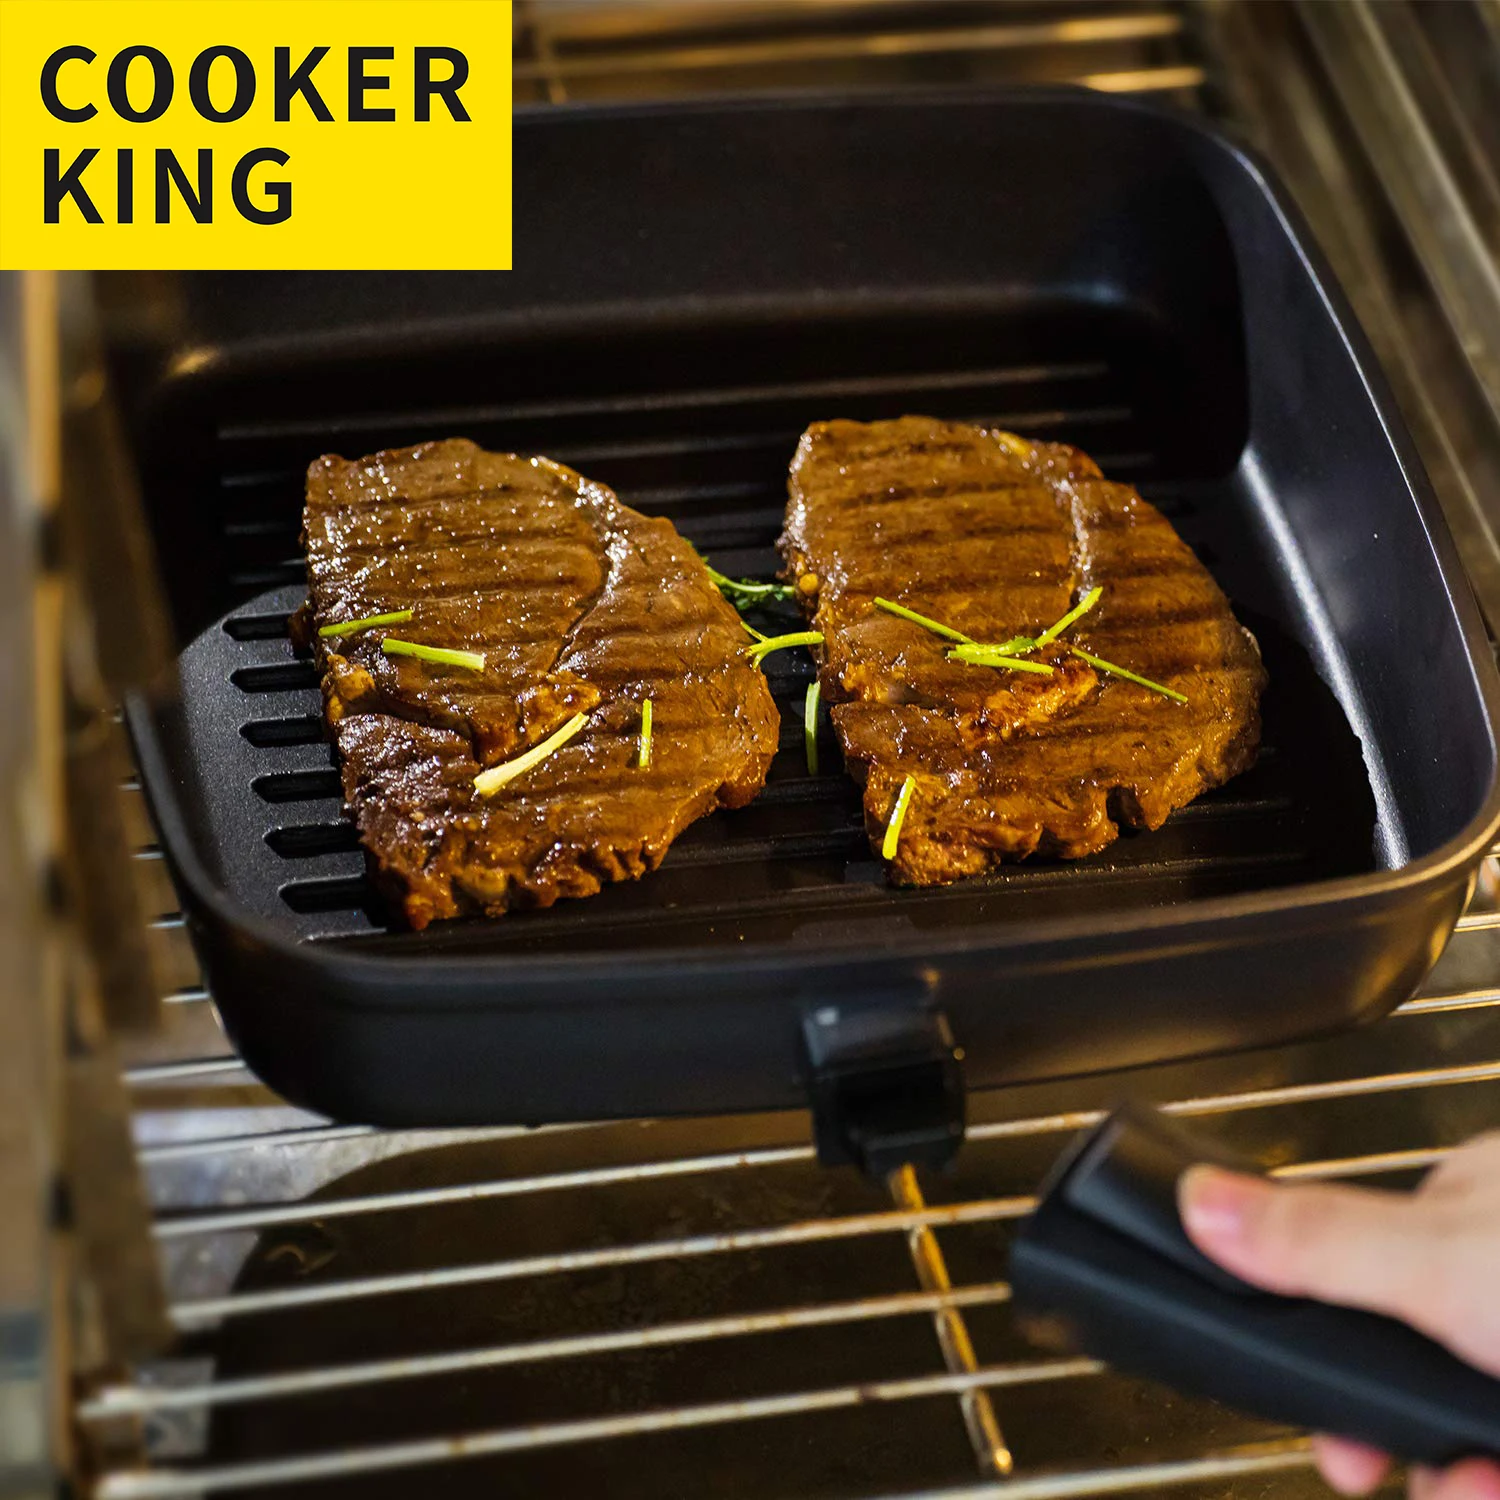 

Антипригарная сковорода COOKER KING для стейка, сковорода для гриля со съемной ручкой, кухонная утварь, безопасная индукционная печь, 26 см